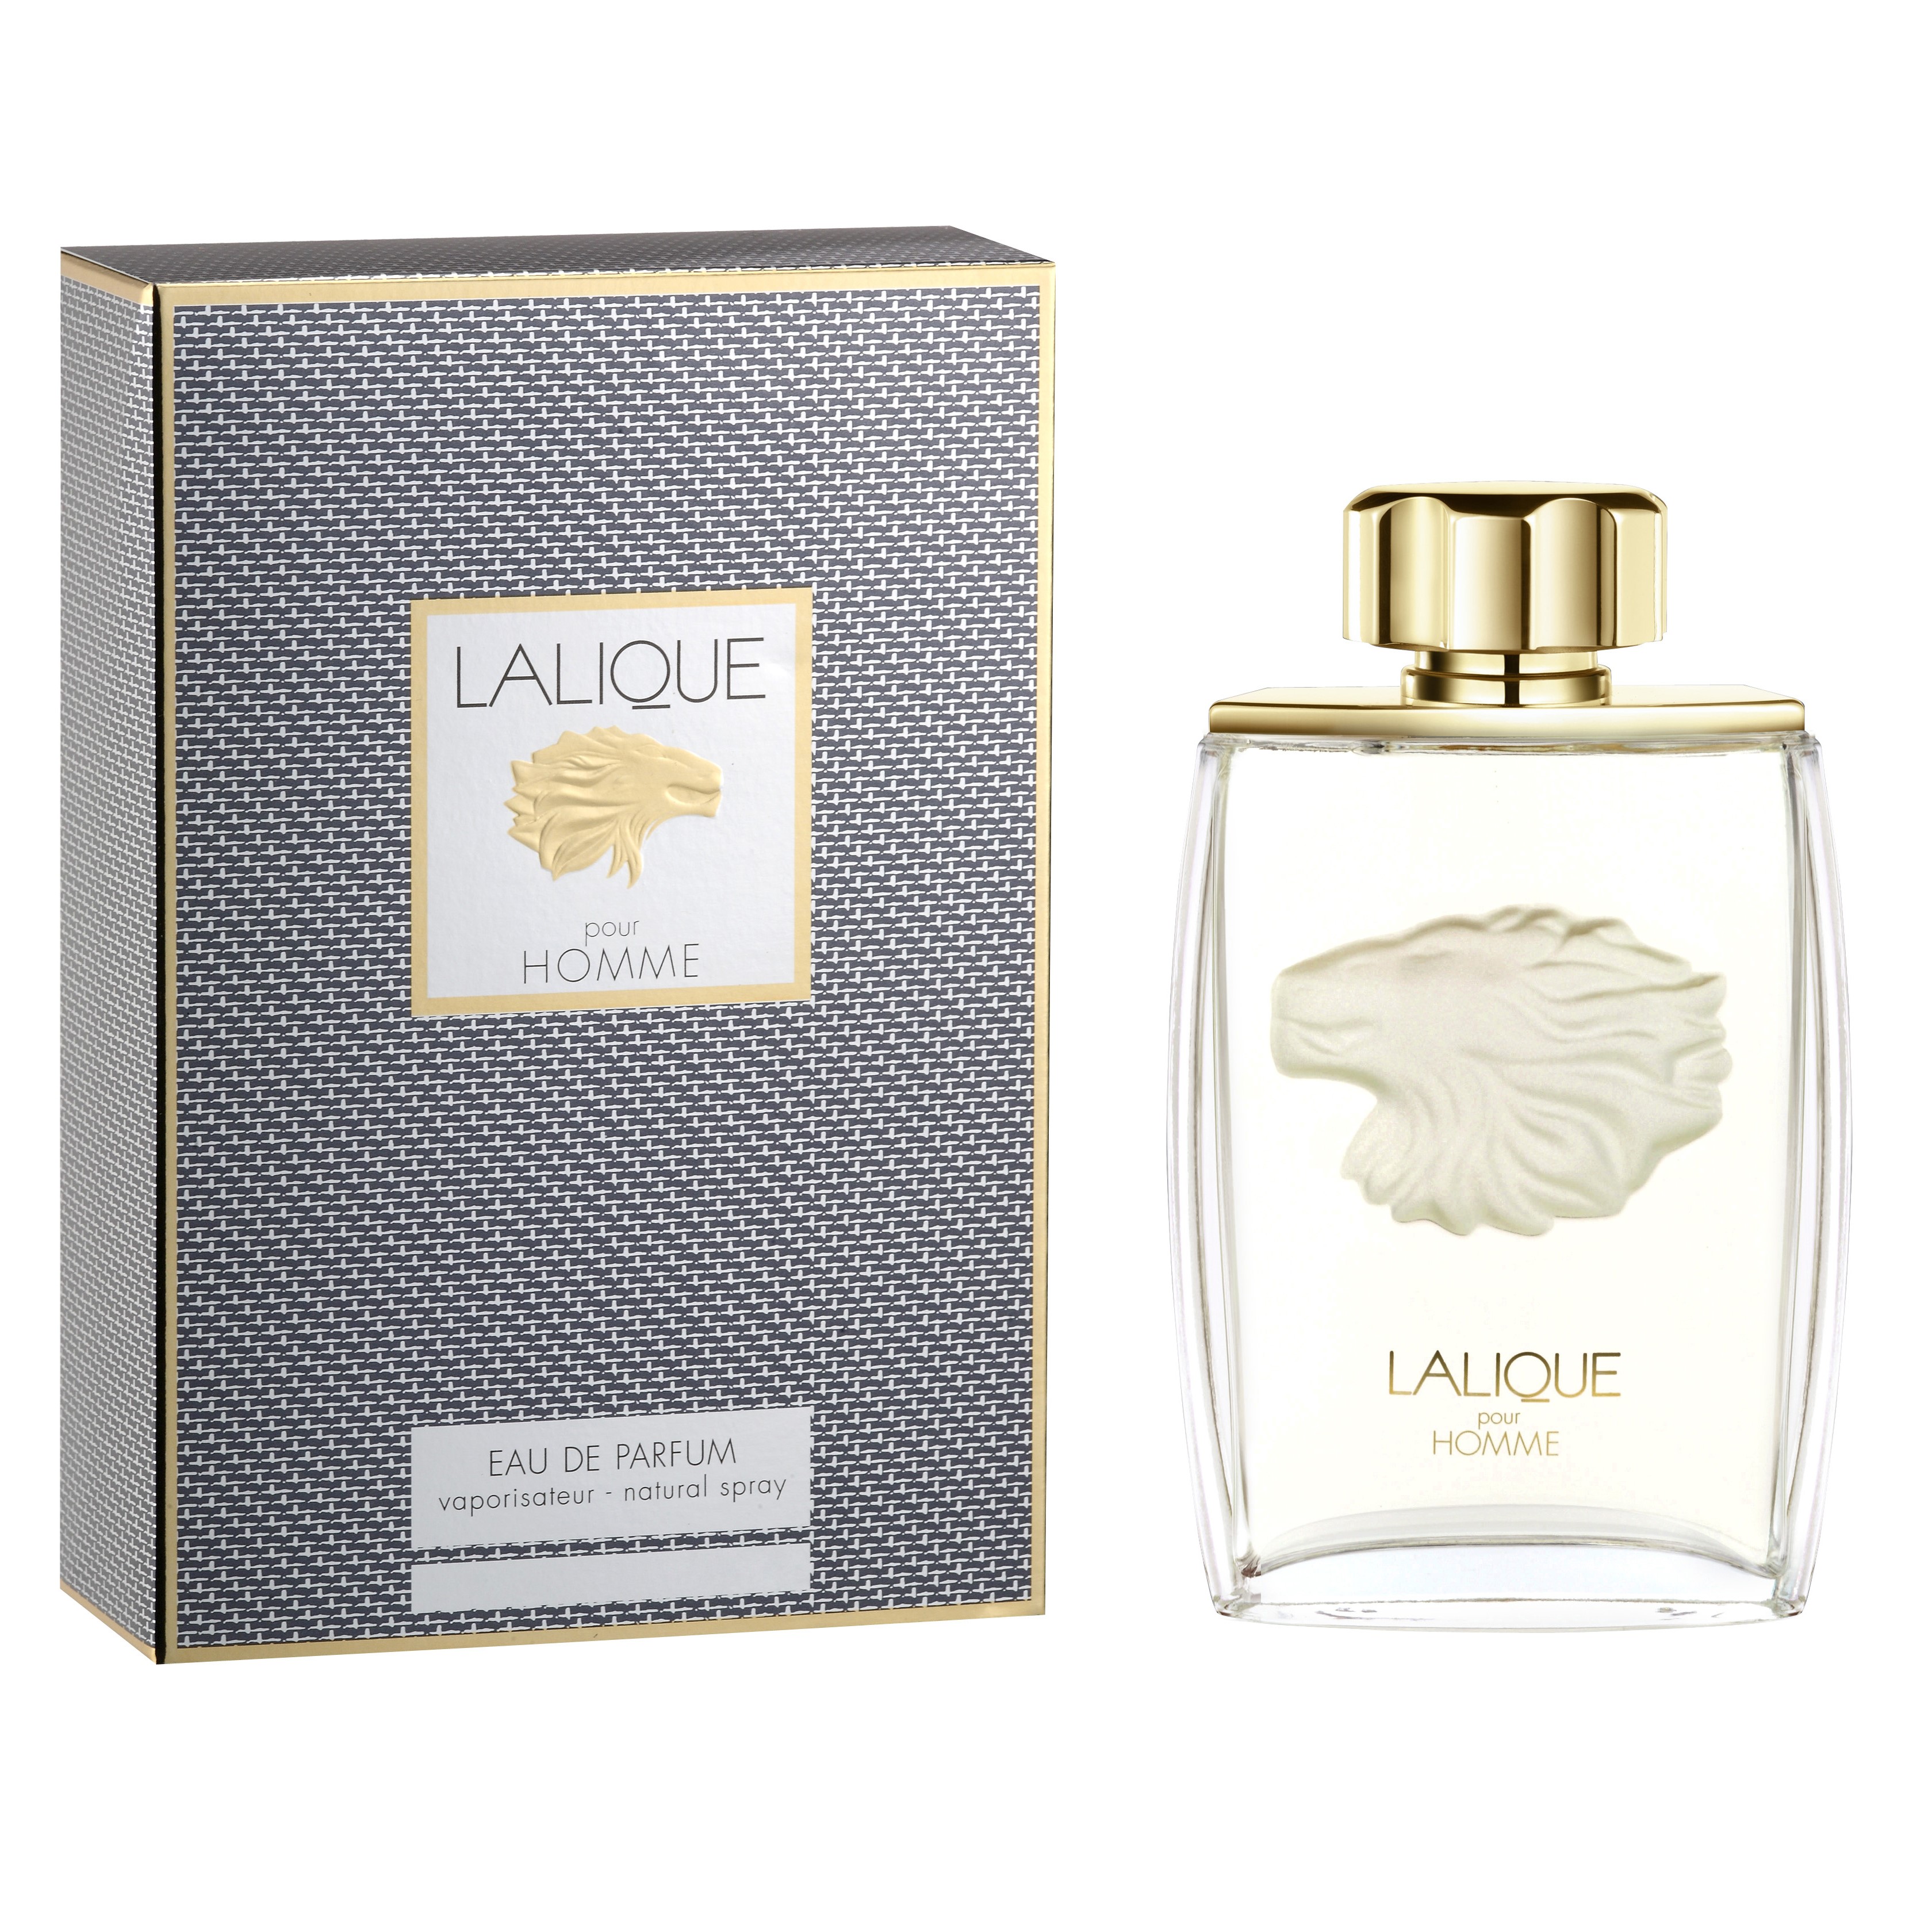 Купить Парфюмерная вода Lalique, Lalique Lion Pour Homme Eau De Parfum 75ml тестер, Франция